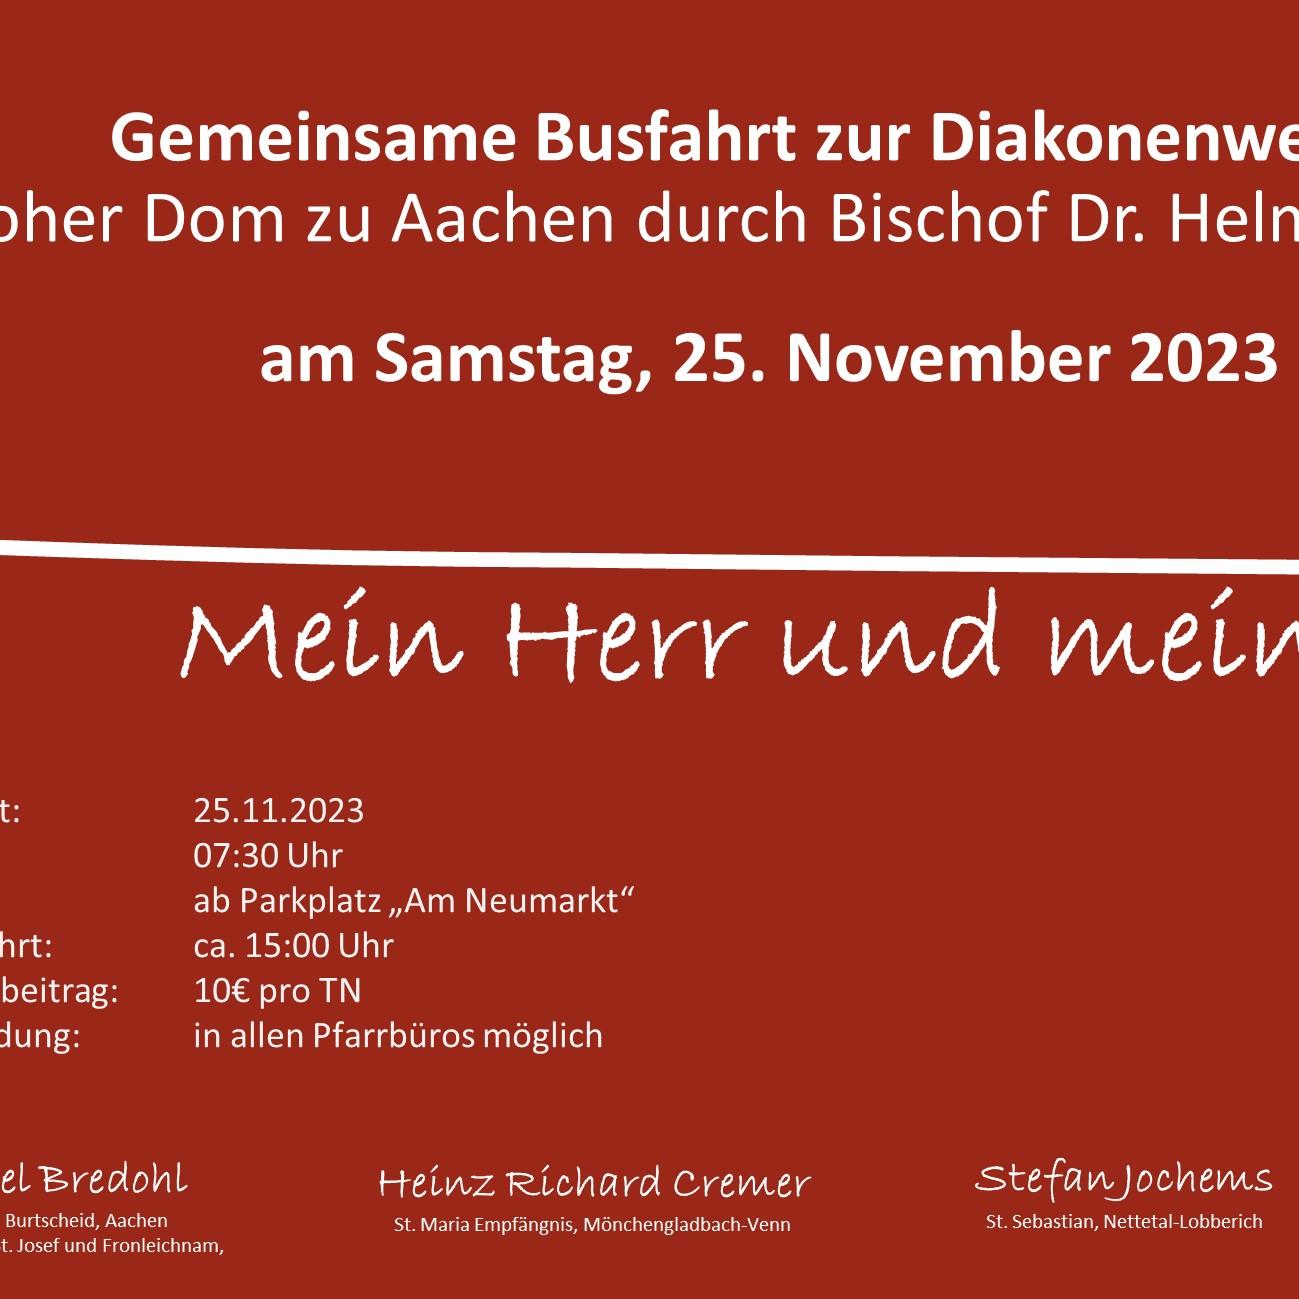 Anmeldung Busfahrt zur Diakonenwihe im hohen Dom zu Aachen am 25.11.2023